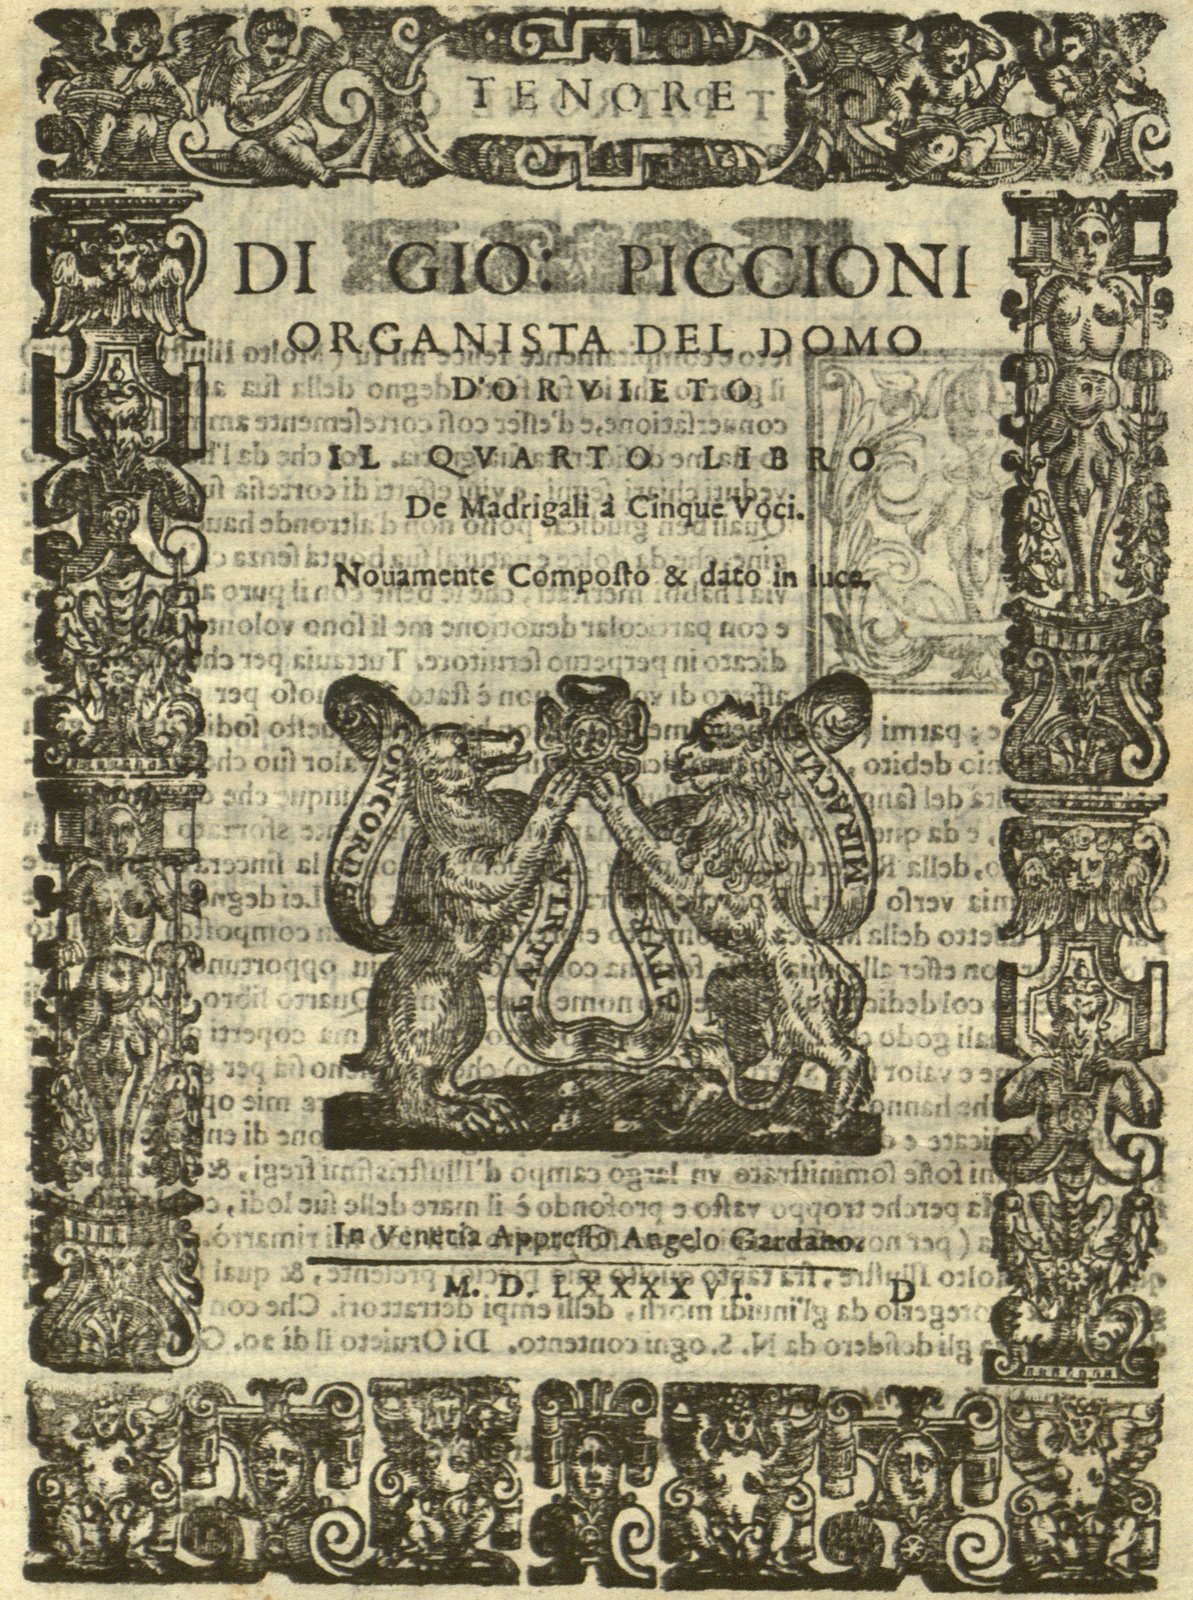 Cover page for tenor partbook from Giovanni Piccioni’s Il quarto libro de madrigali à cinque voci